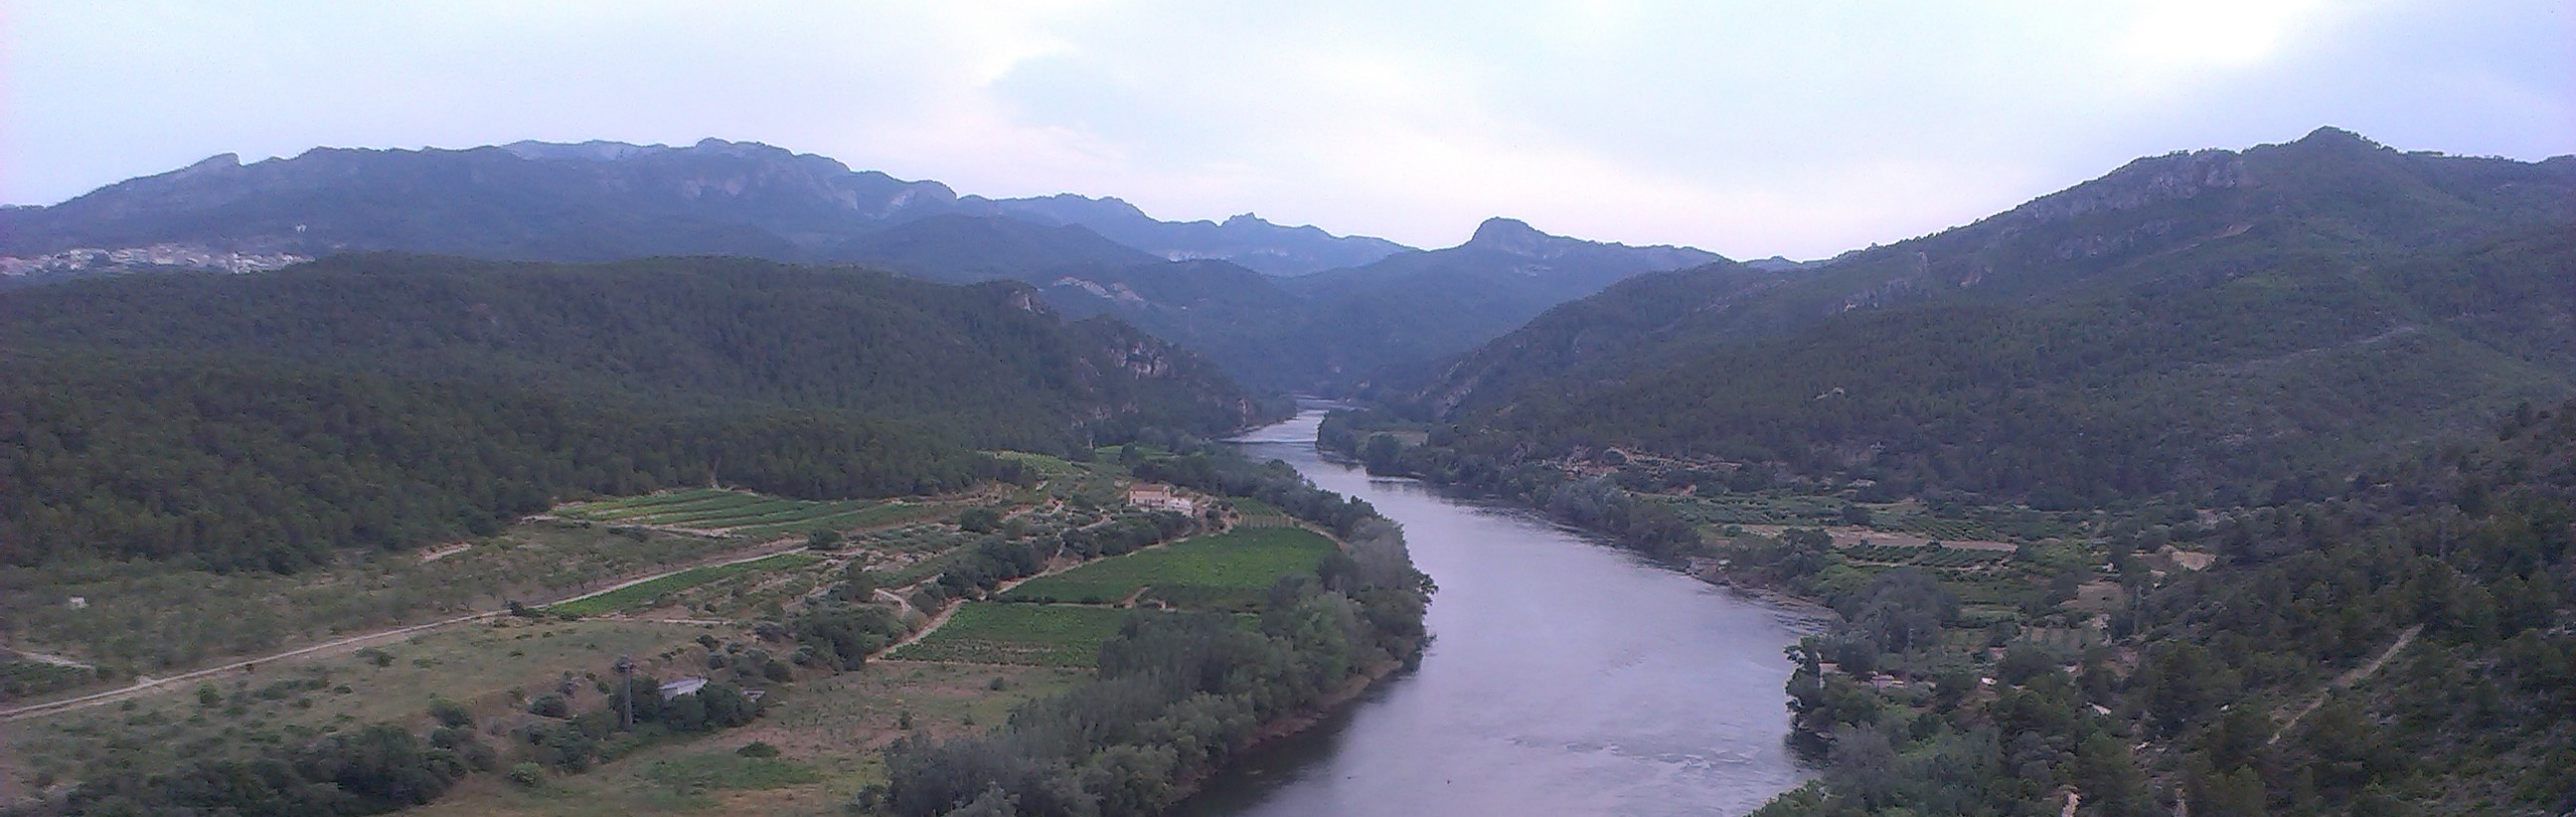 La Confederación Hidrográfica del Ebro realiza una nueva actuación de documentación y restauración